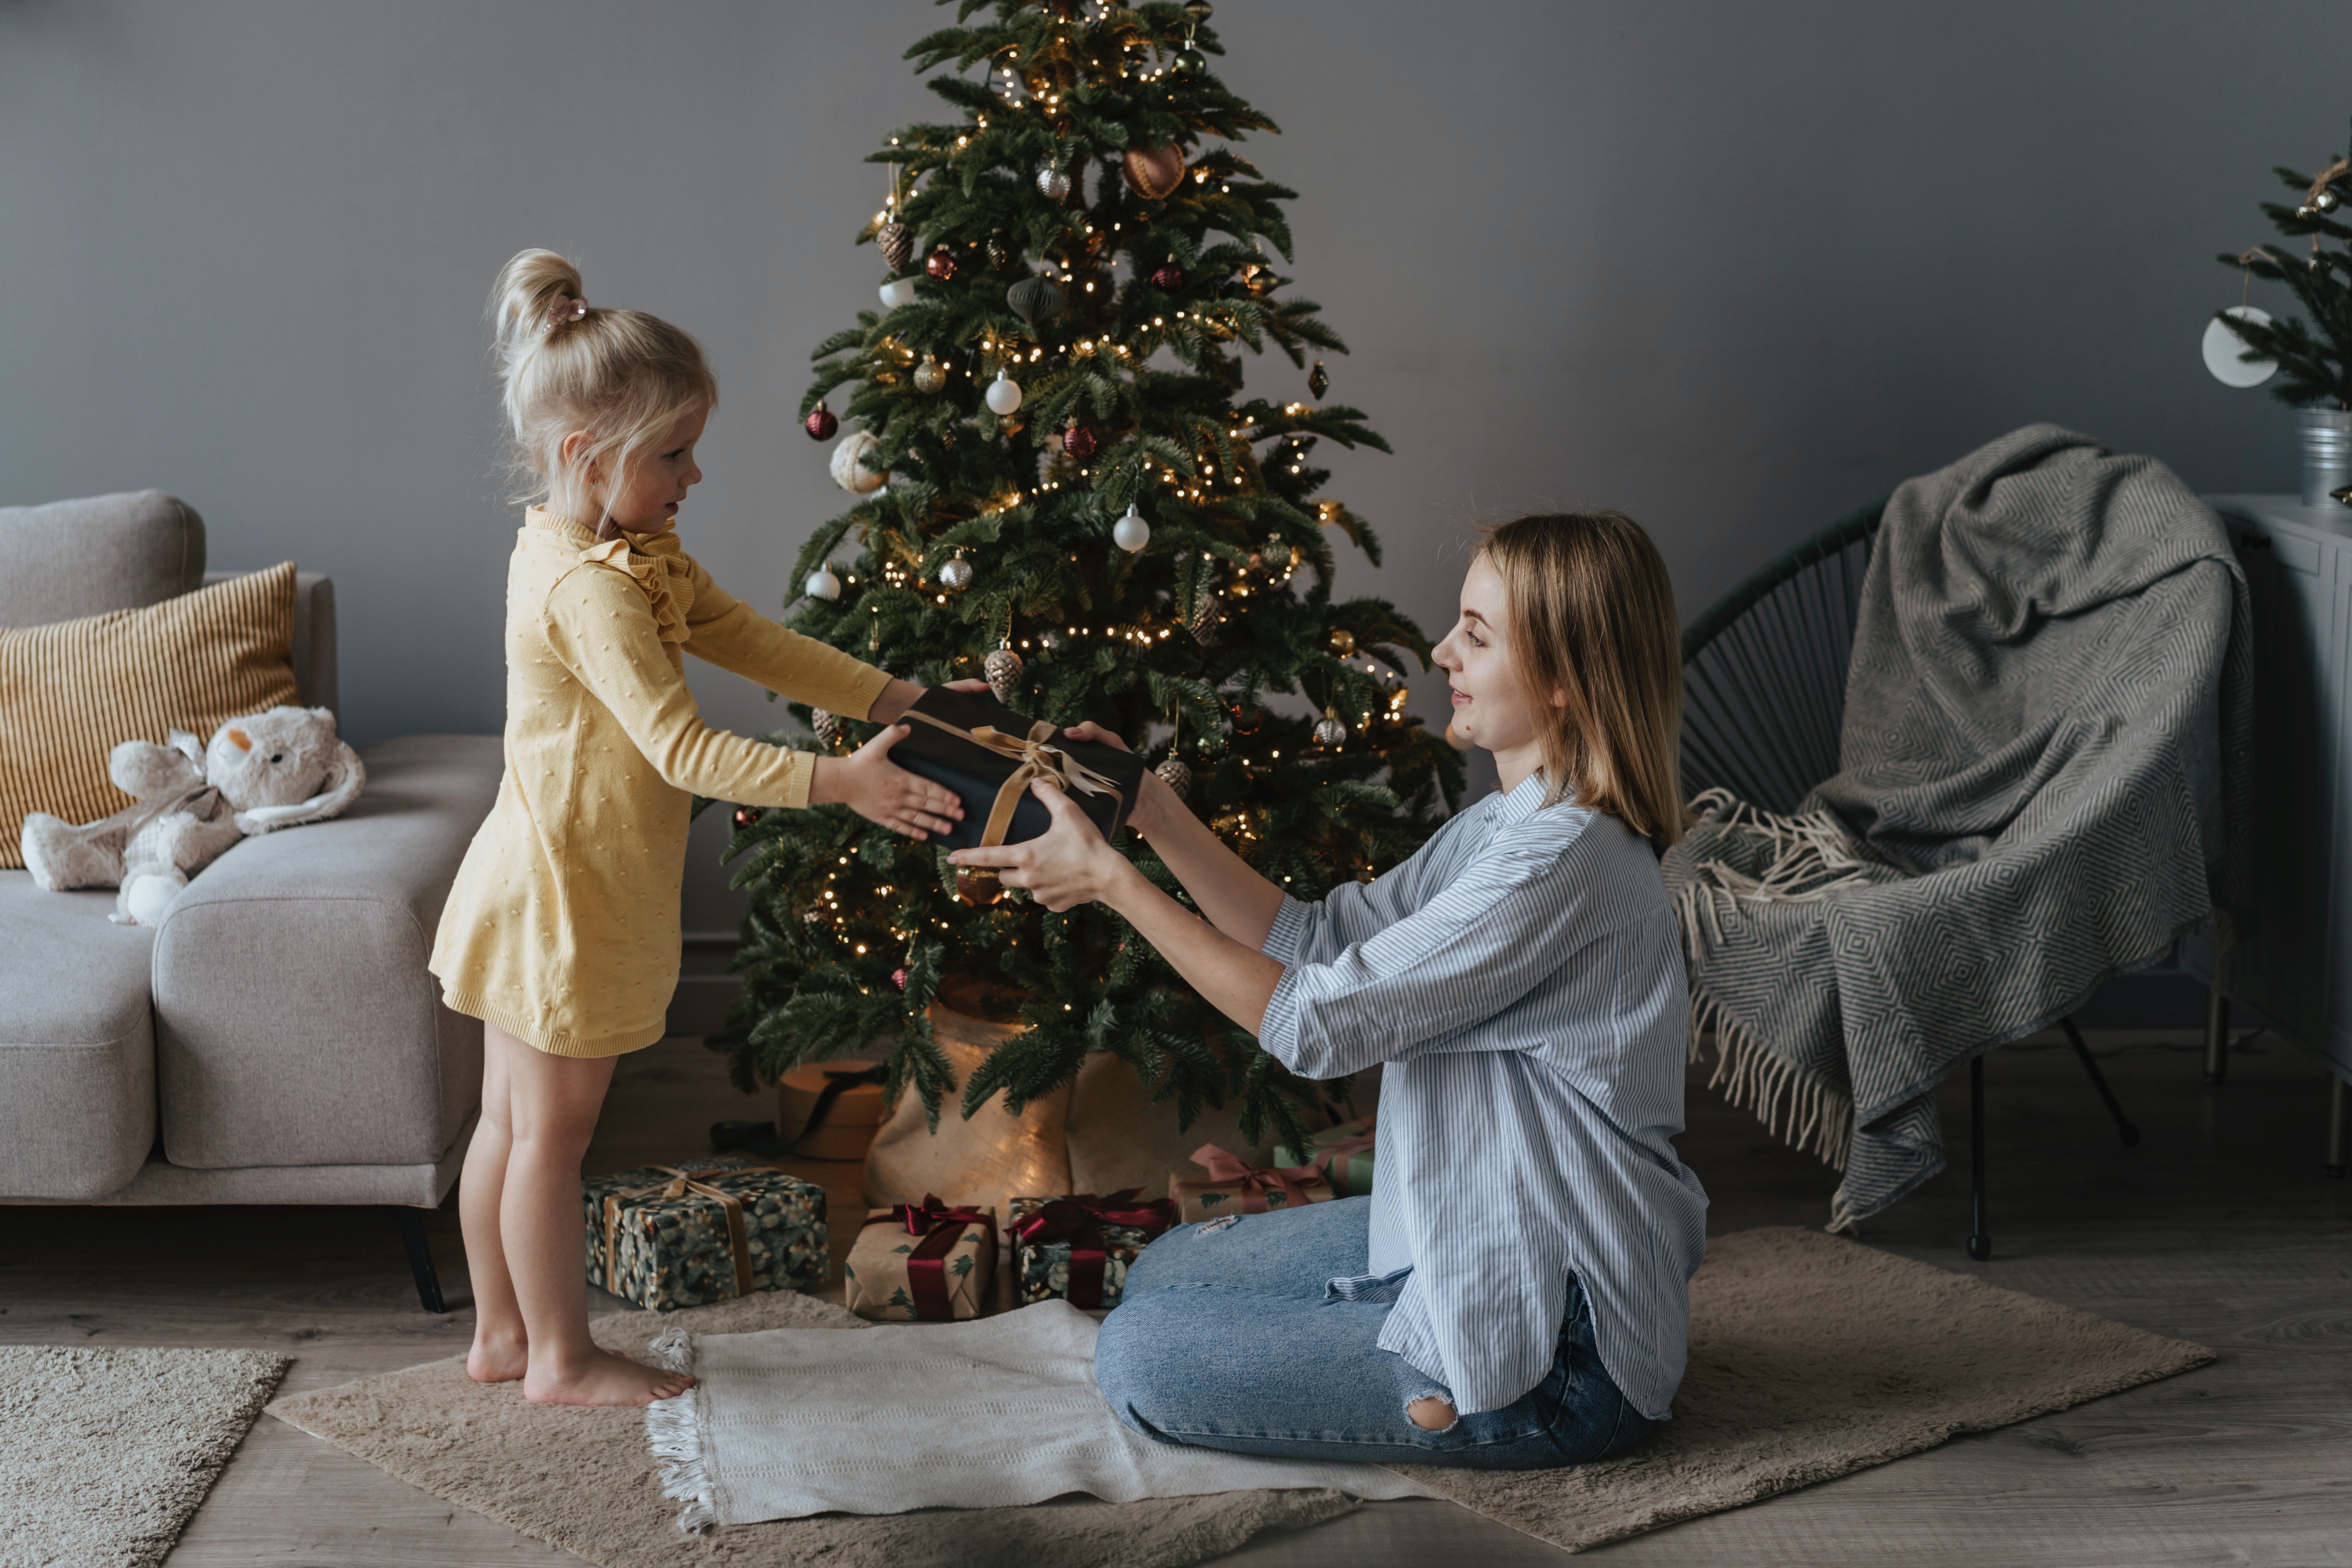 Una niña da un regalo a su madre frente al árbol de navidad. | Foto: Pexels